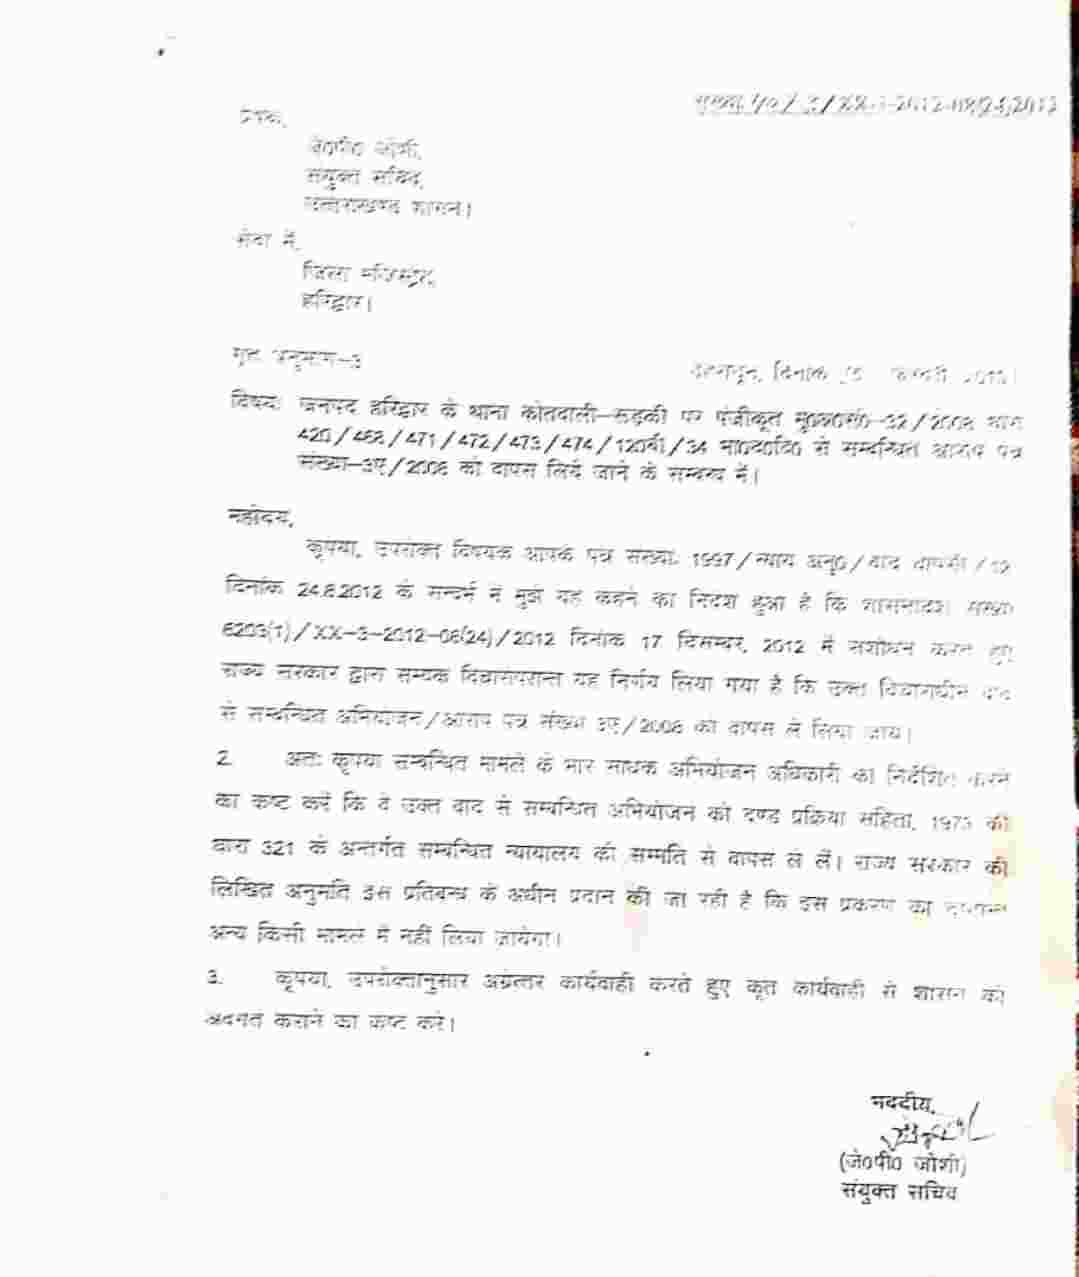 Uttarakhand: विधायक प्रदीप बत्रा मामले में दरोगा का स्थानांतरण पुलिसिया कार्रवाई पर प्रश्नचिन्ह, स्थानांतरण जल्दबाजी में लिया गया निर्णय - मोर्चा 3 Hello Uttarakhand News »